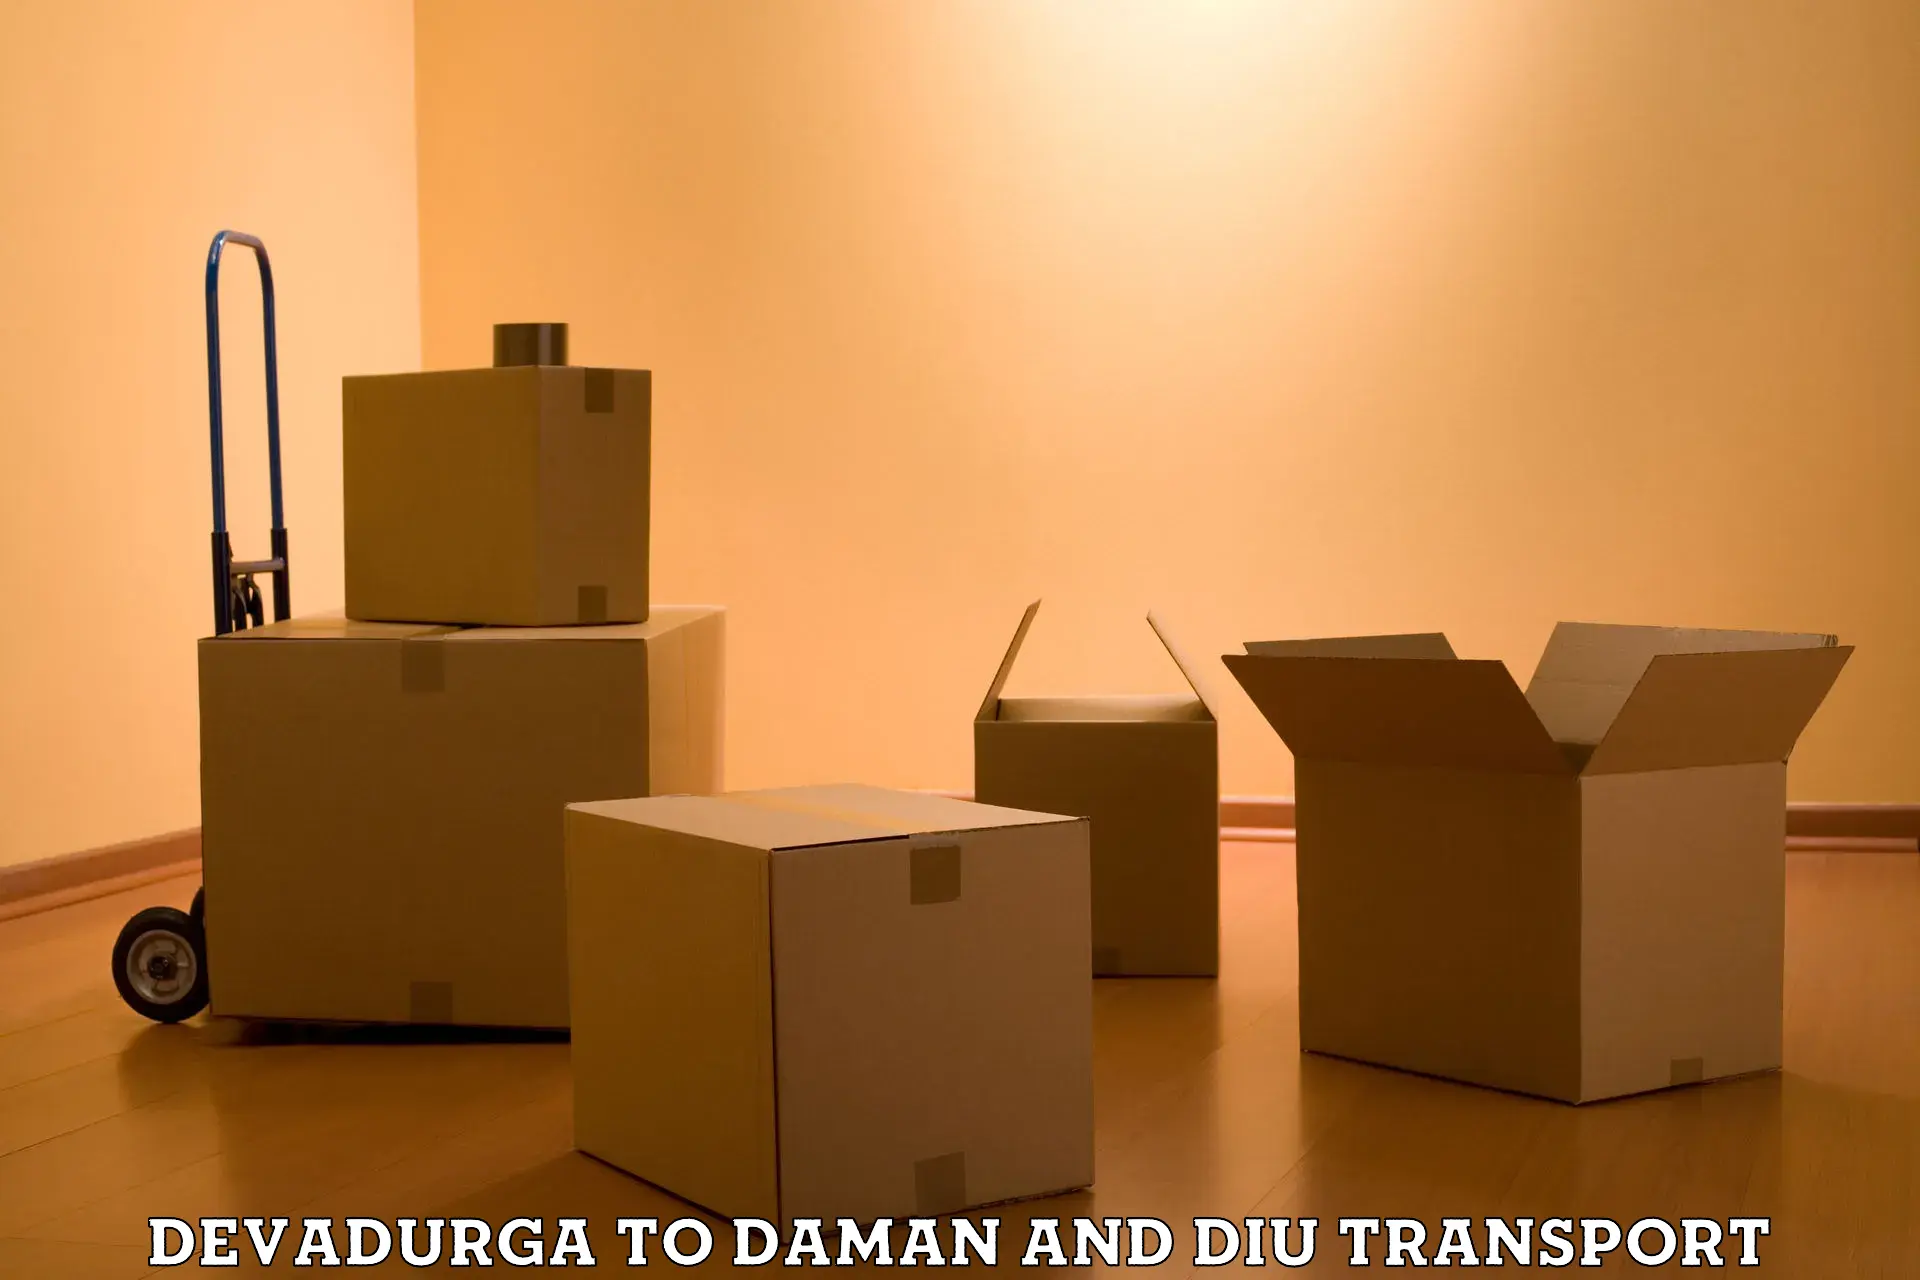 Furniture transport service Devadurga to Diu